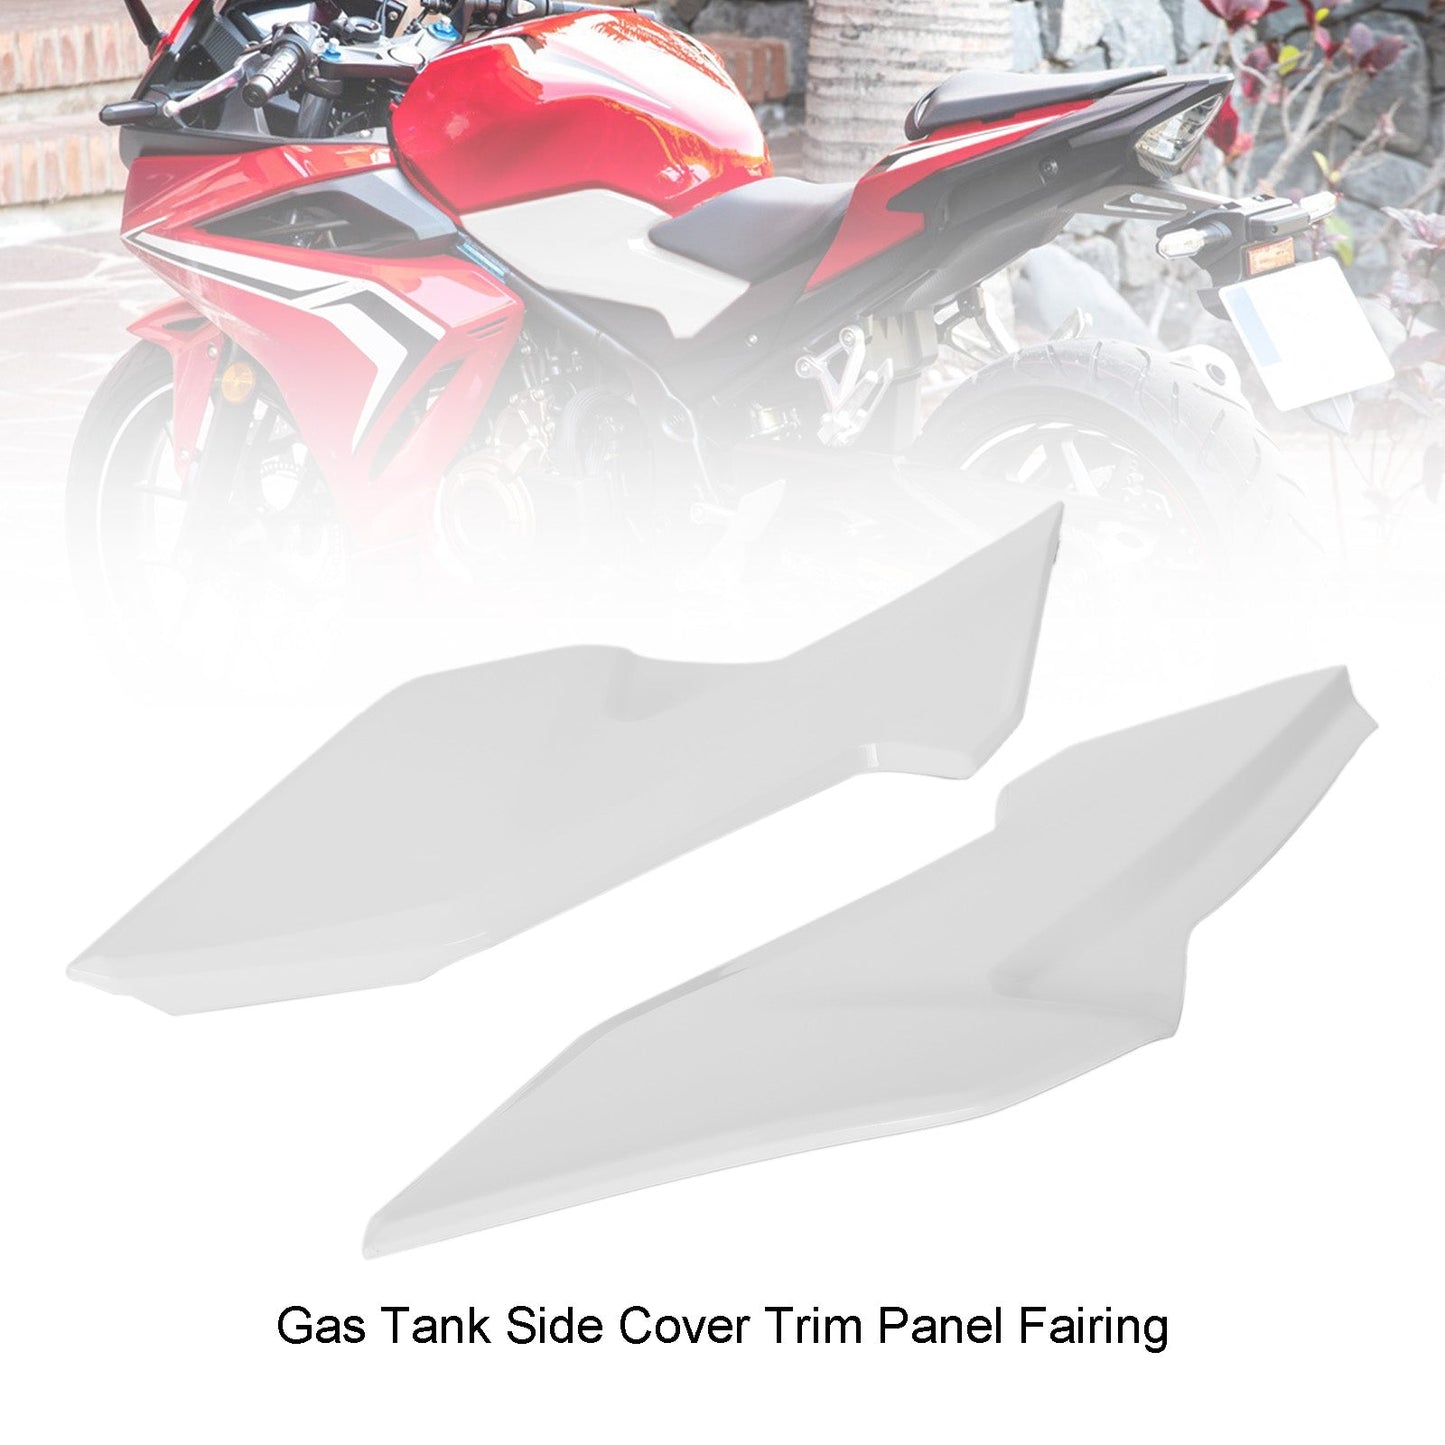 Gas Tank Side Cover Trim Panel Fairing For HONDA CBR500R 2019-2021 White